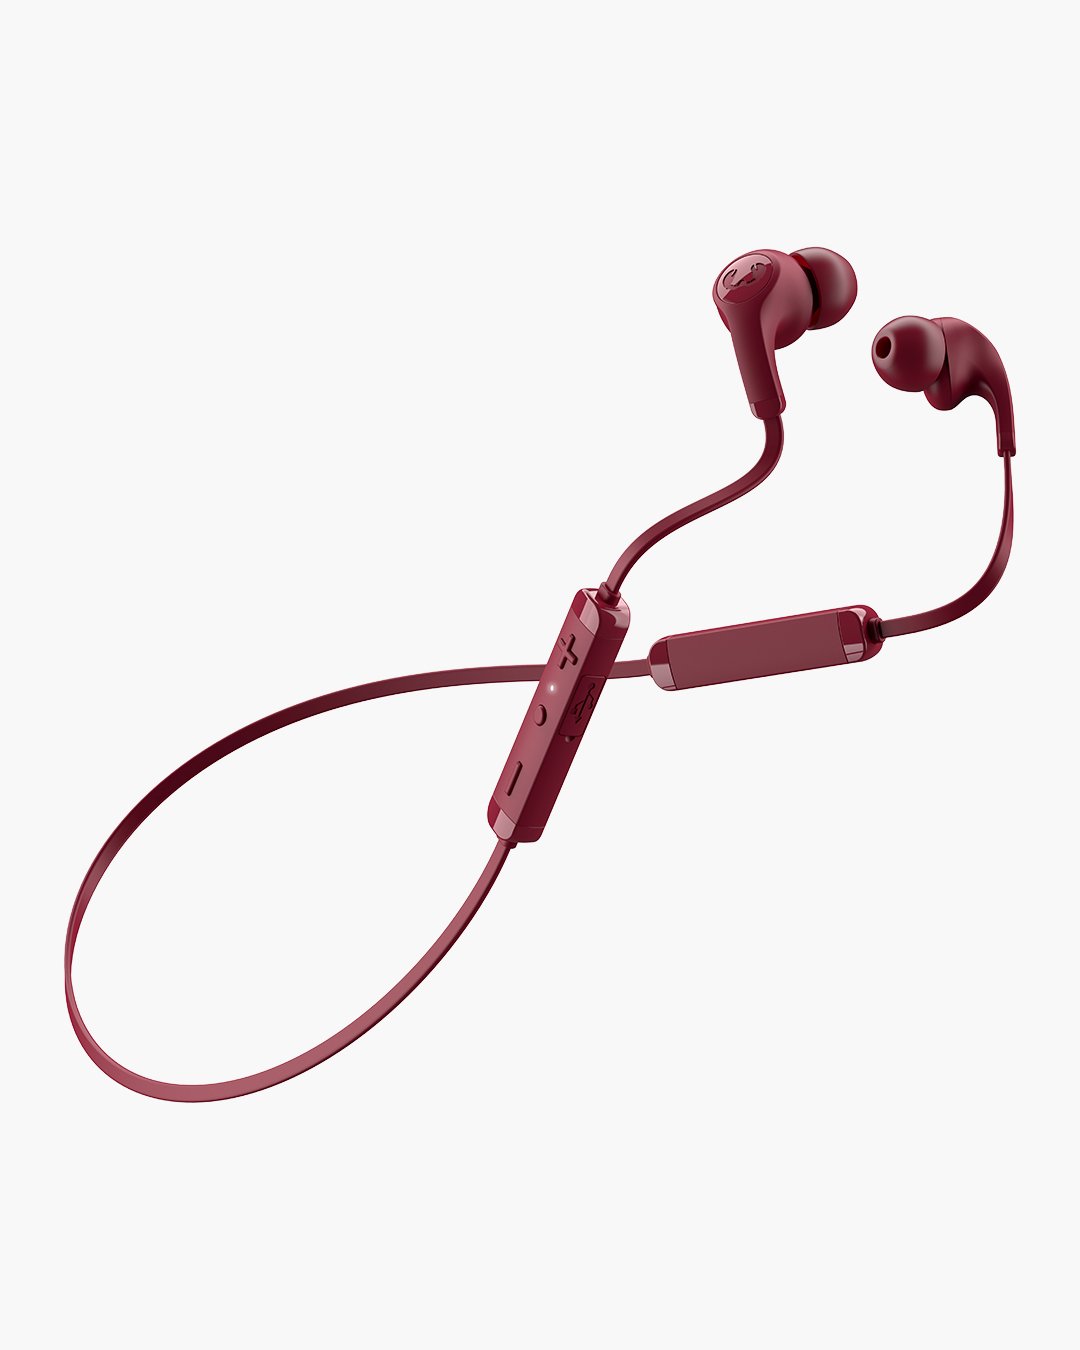 Fresh 'n Rebel - Flow Wireless - In-ear headphones with ear tip - Ruby Red